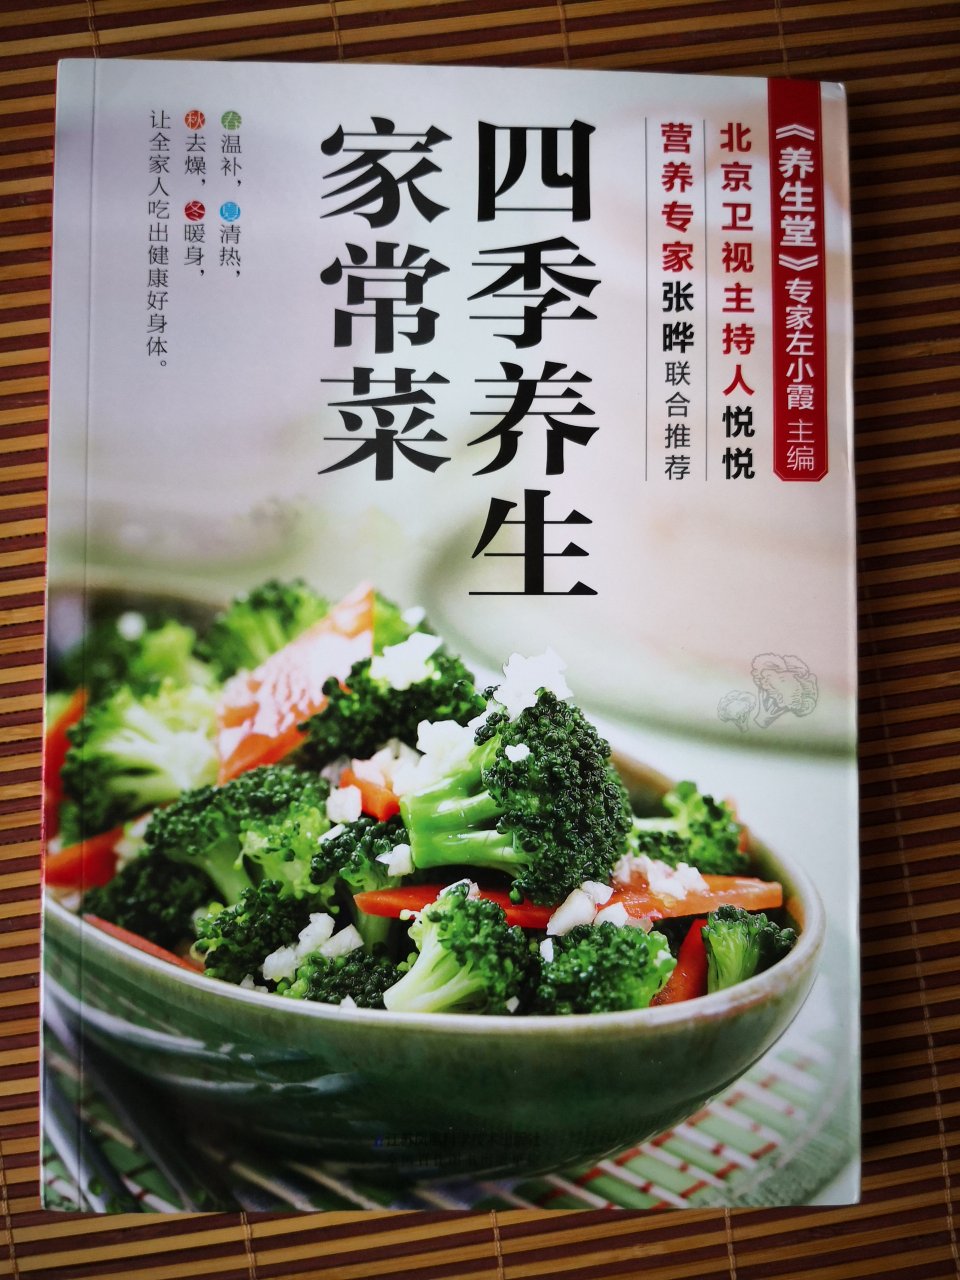 各种食材的营养价值，营养搭配，简单医学的菜谱，这本书真的不错。